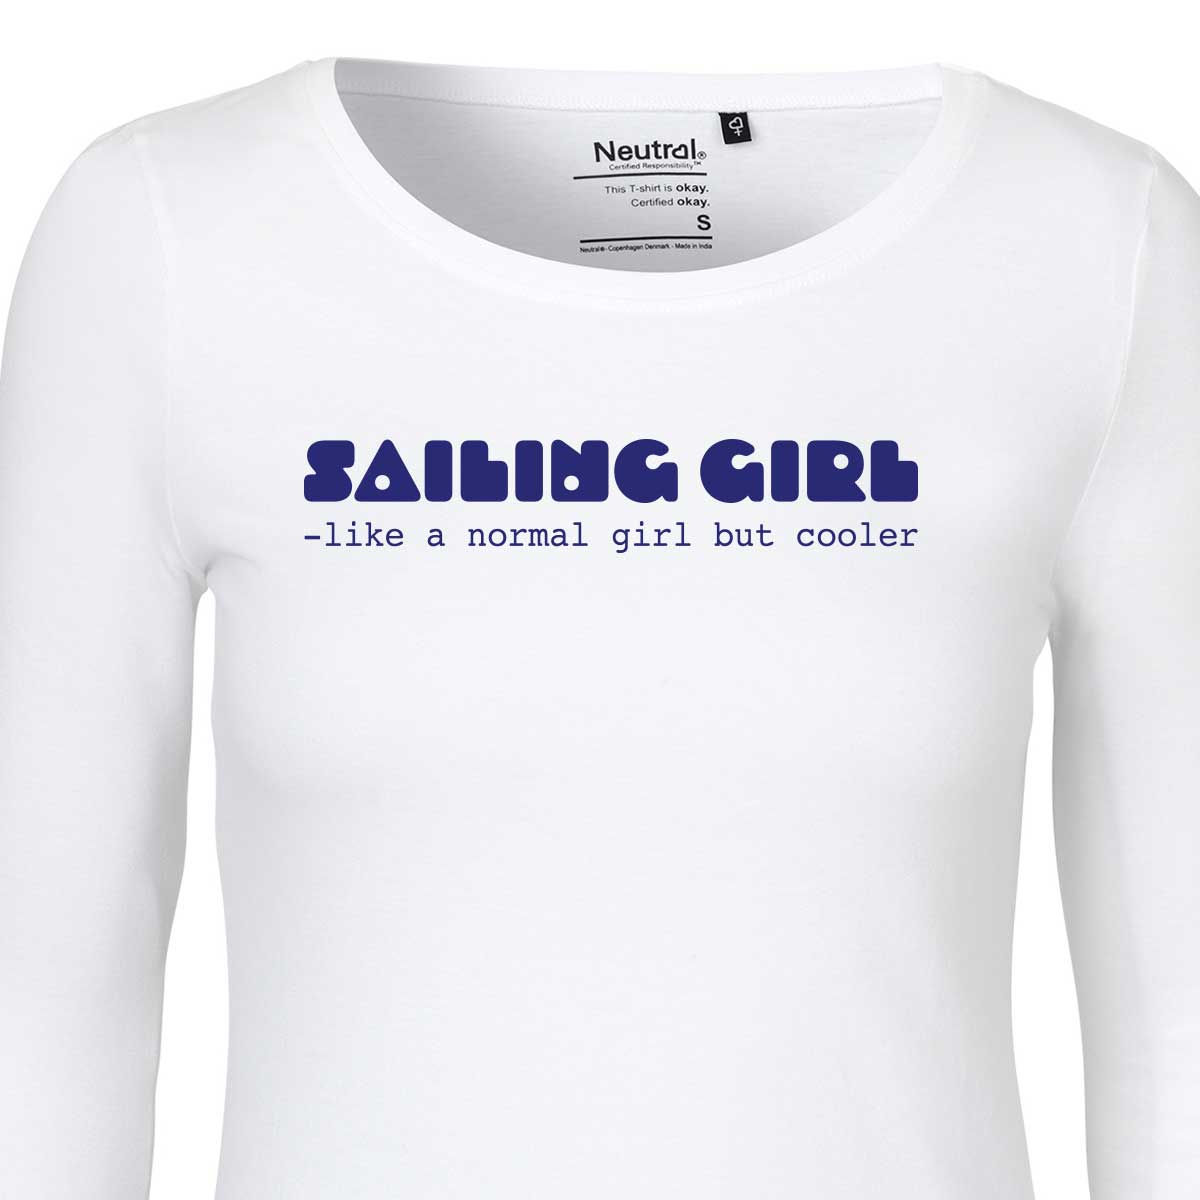 Langermet hvit t-skjorte, Sailing girl, XS